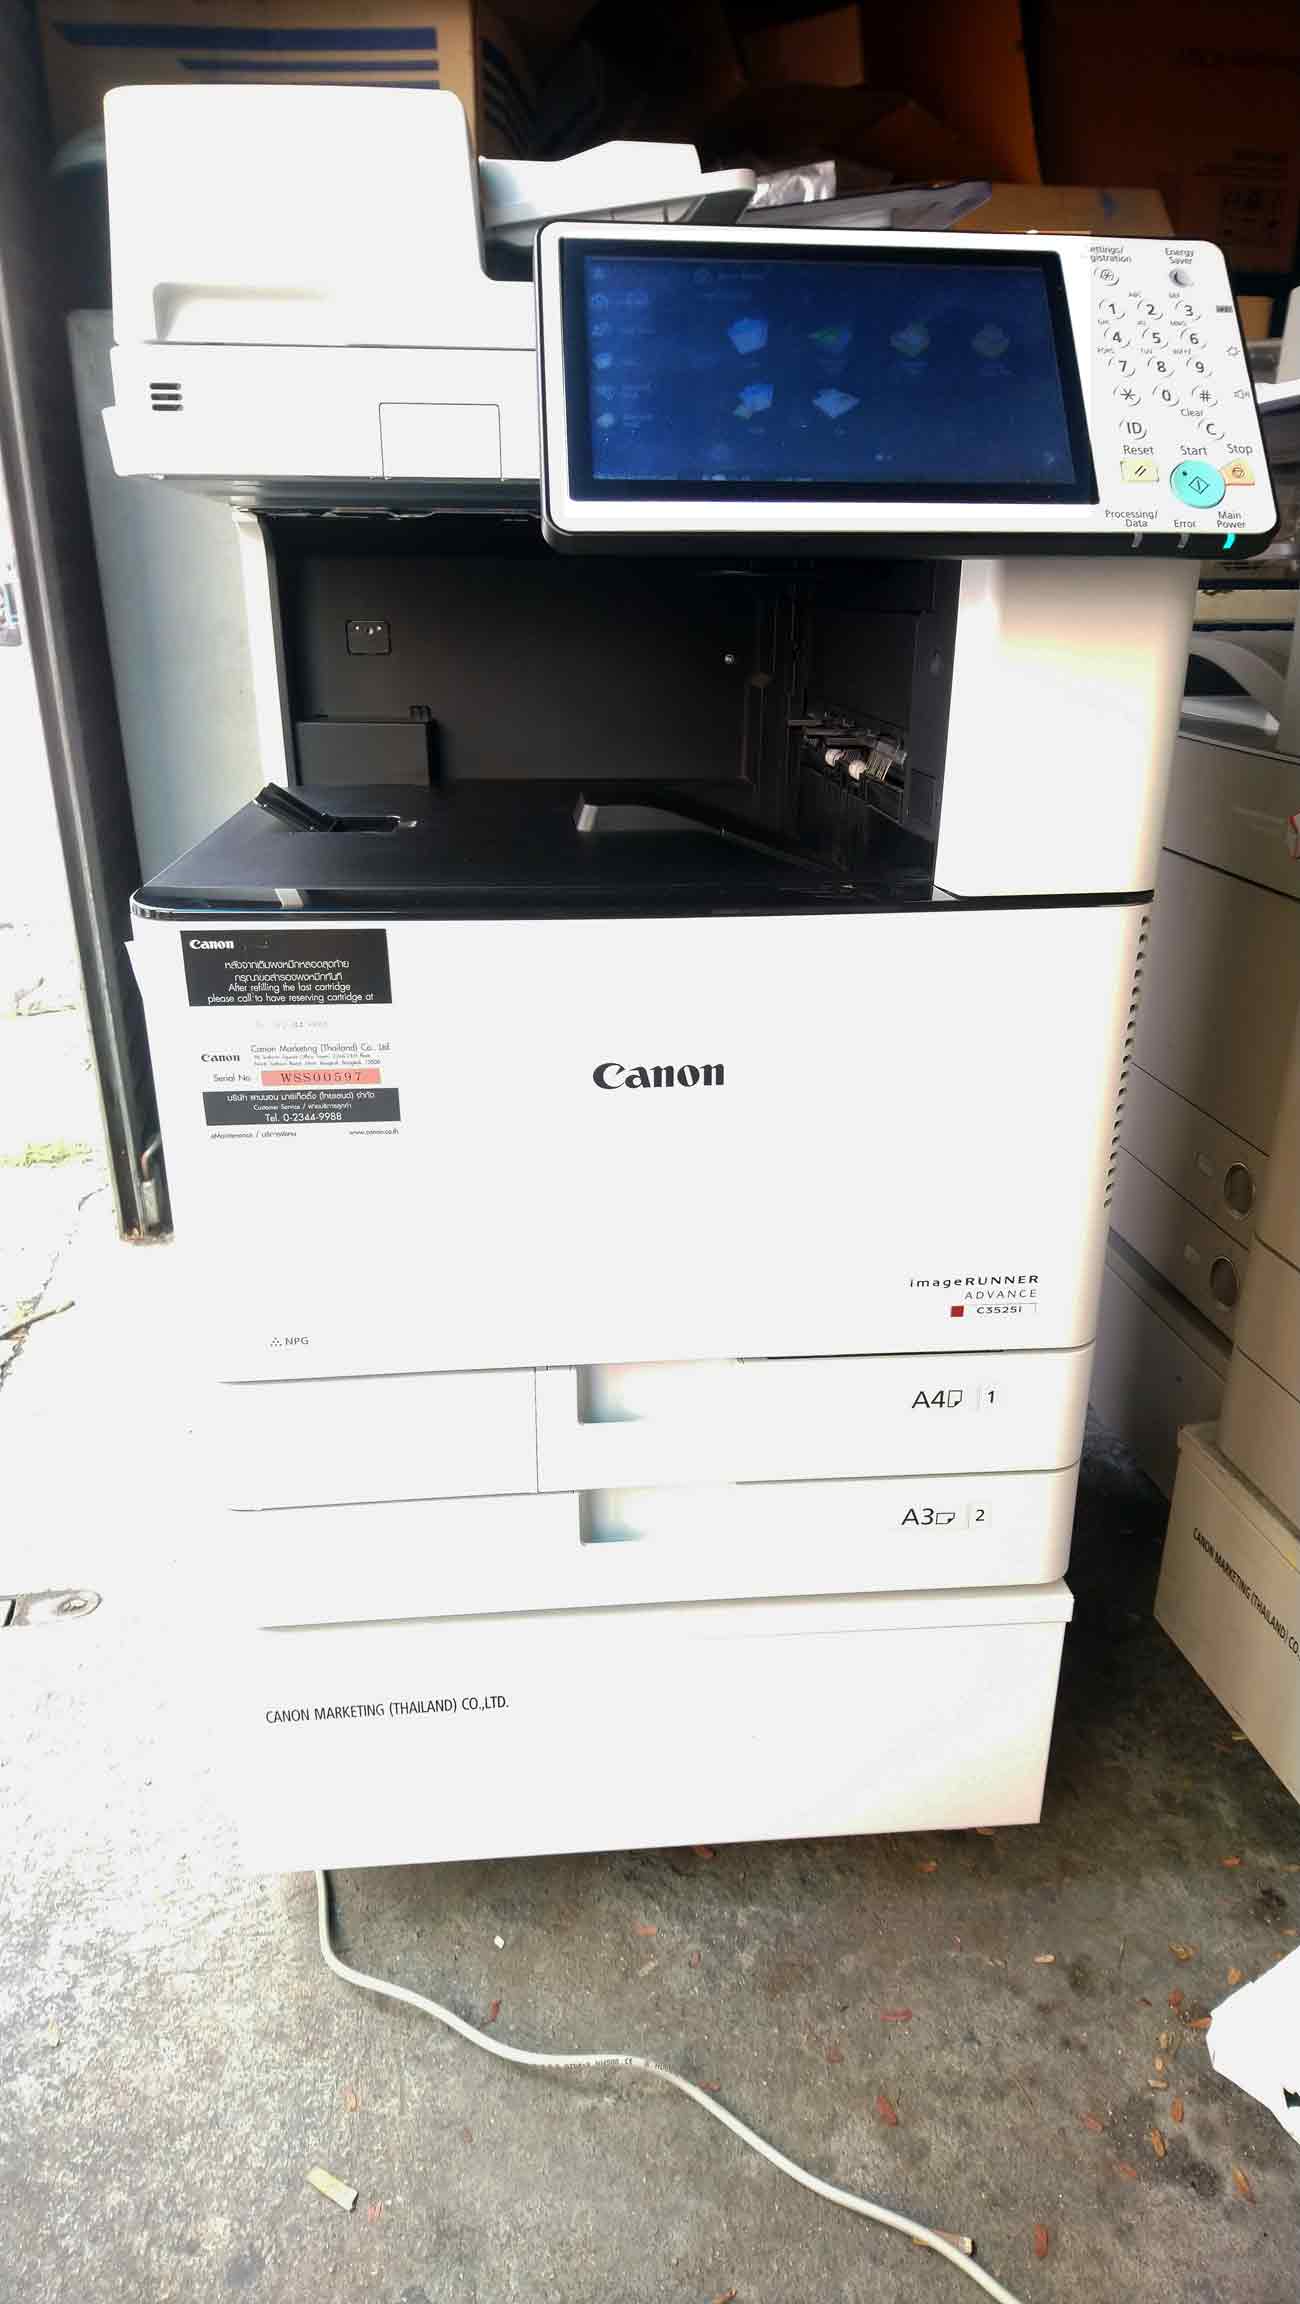 เครื่องถ่ายเอกสารสีมือสอง CANON Advance C3525i รุ่นใหม่ชนห้าง มิเตอร์น้อยมาก 1